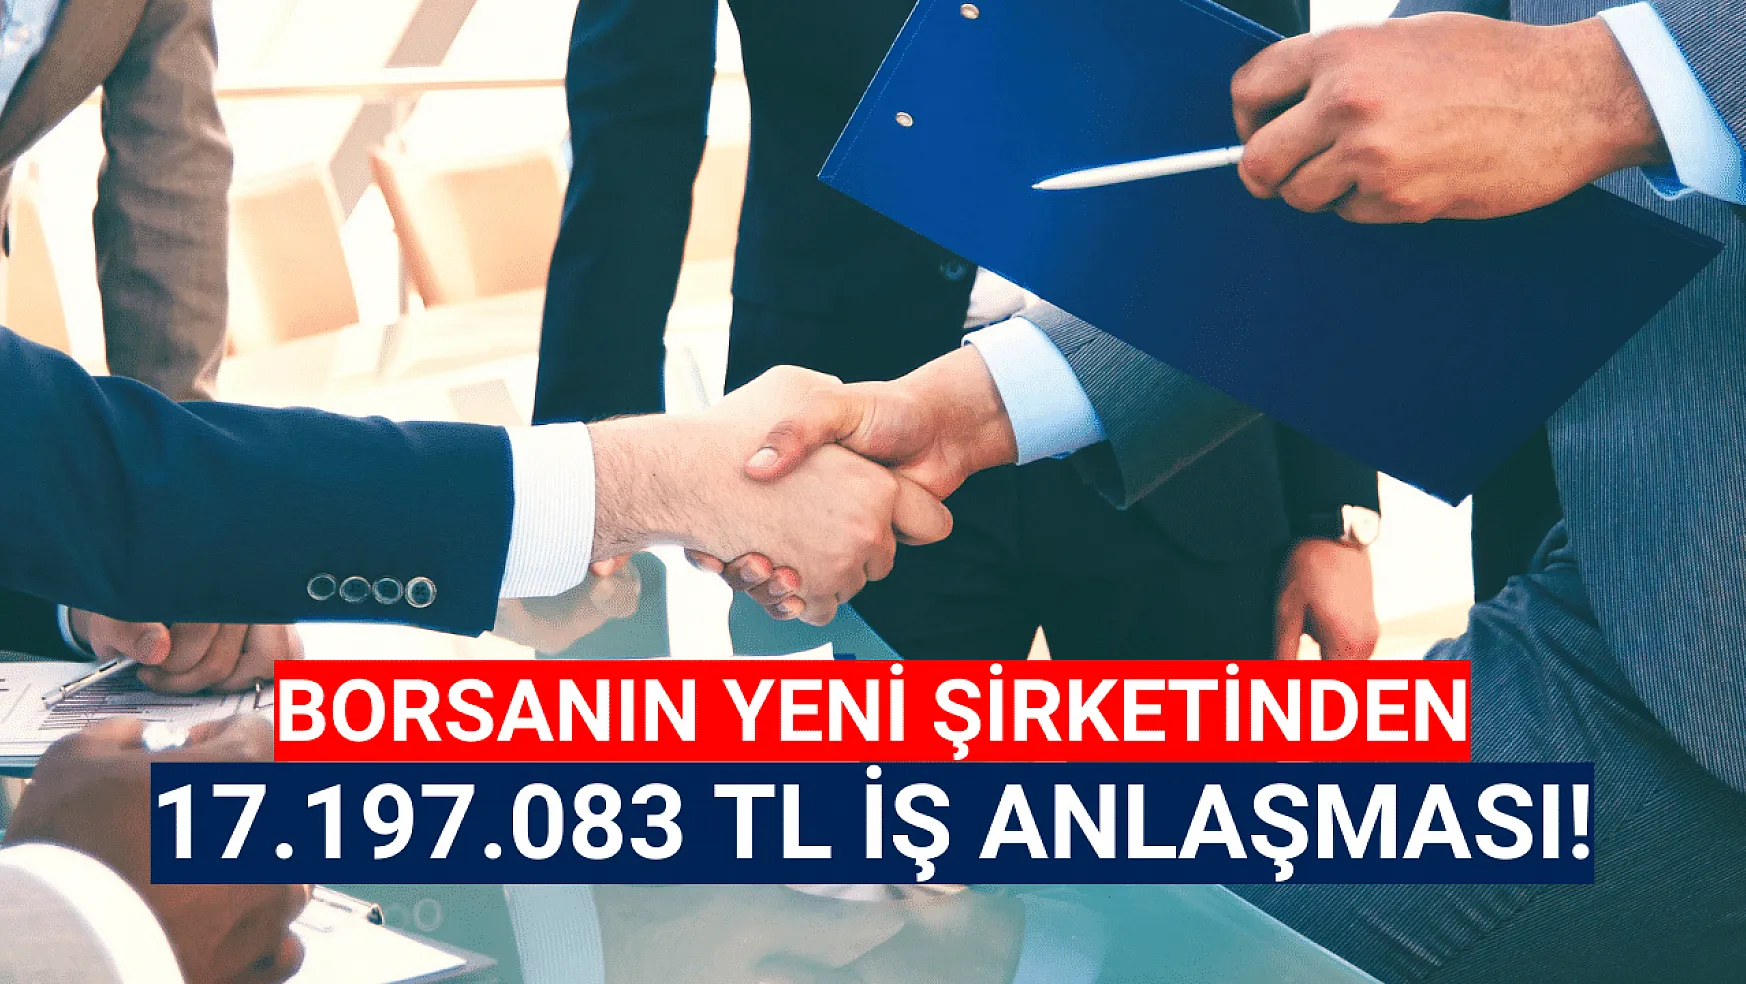 Borsanın yeni şirketinden 17.197.083 TL'lik iş anlaşması!